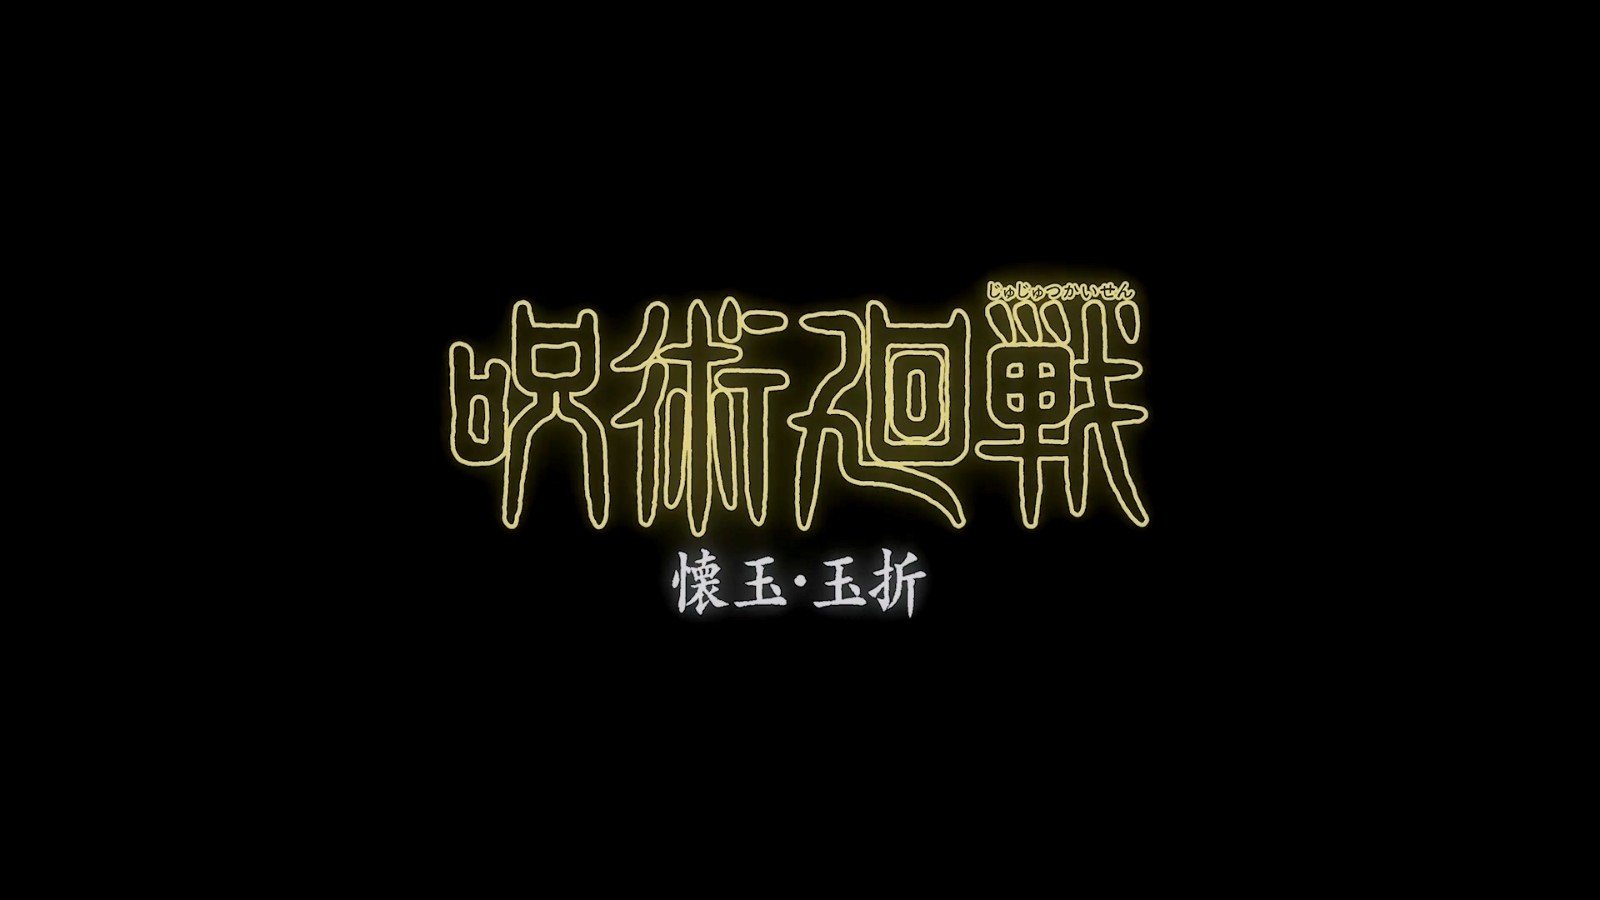 《咒术回战》第二季正式预告 7月6日开播